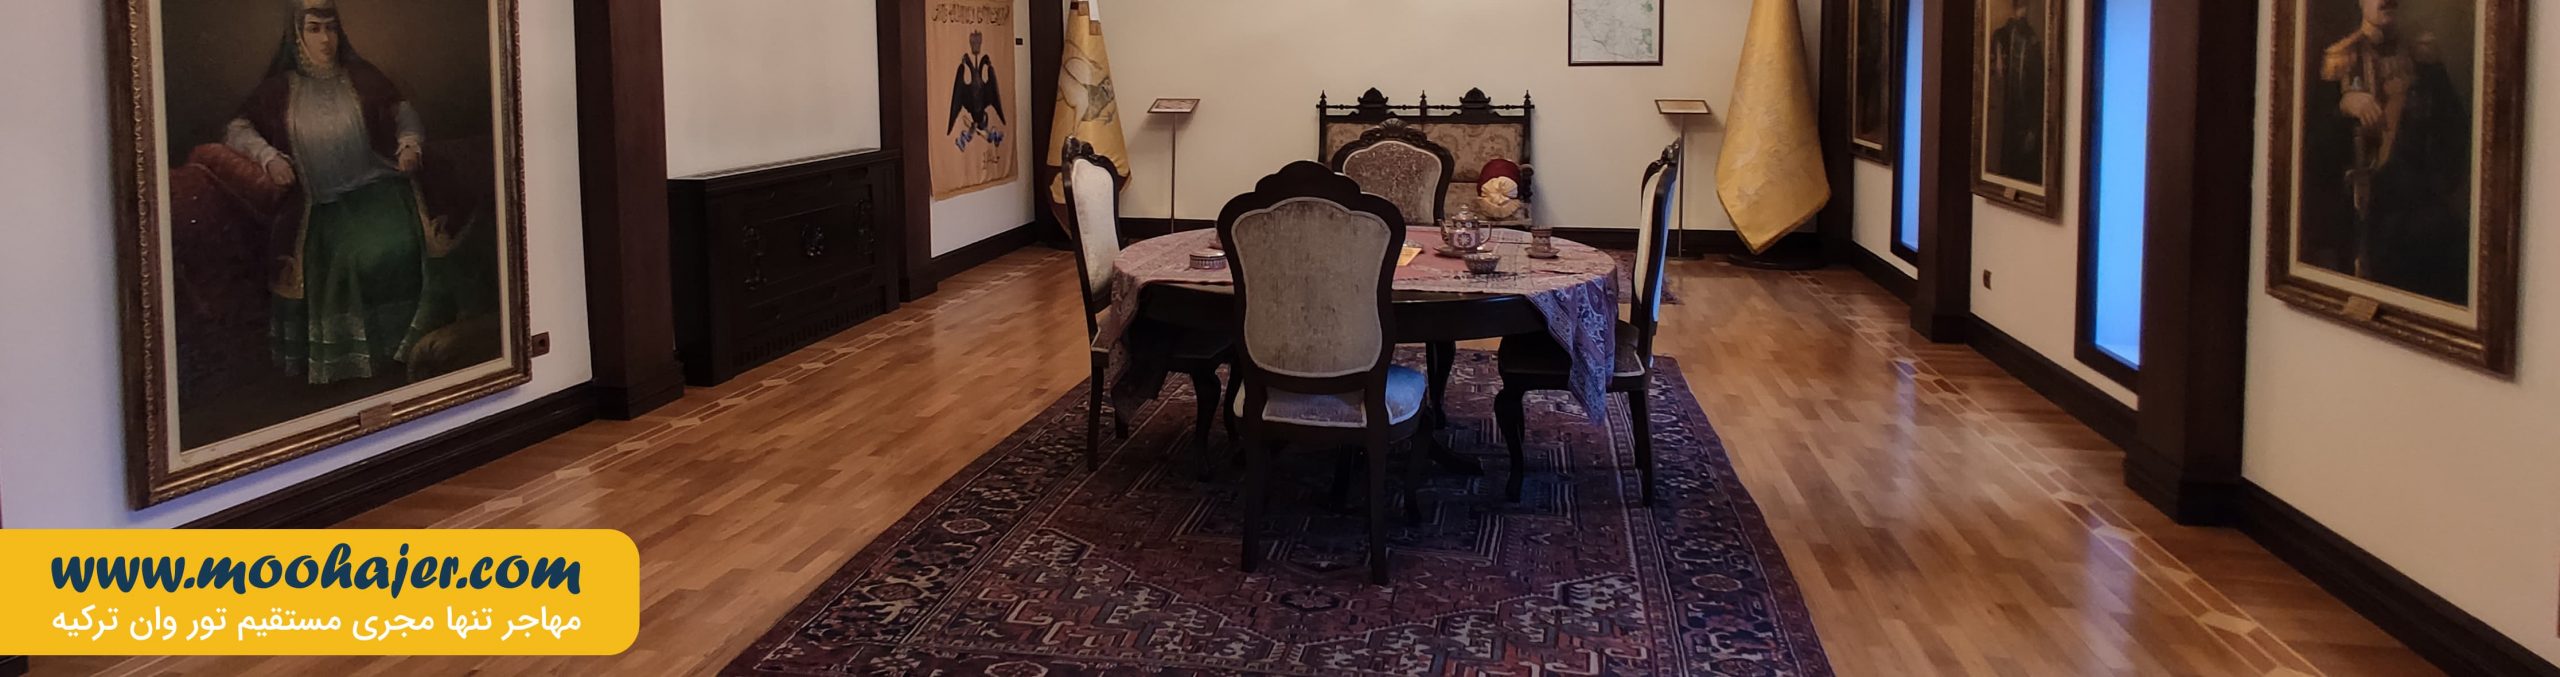 خان سارای نخجوان | The Museum of Carpets | تور نخجوان | مهاجر سیر ایرانیان